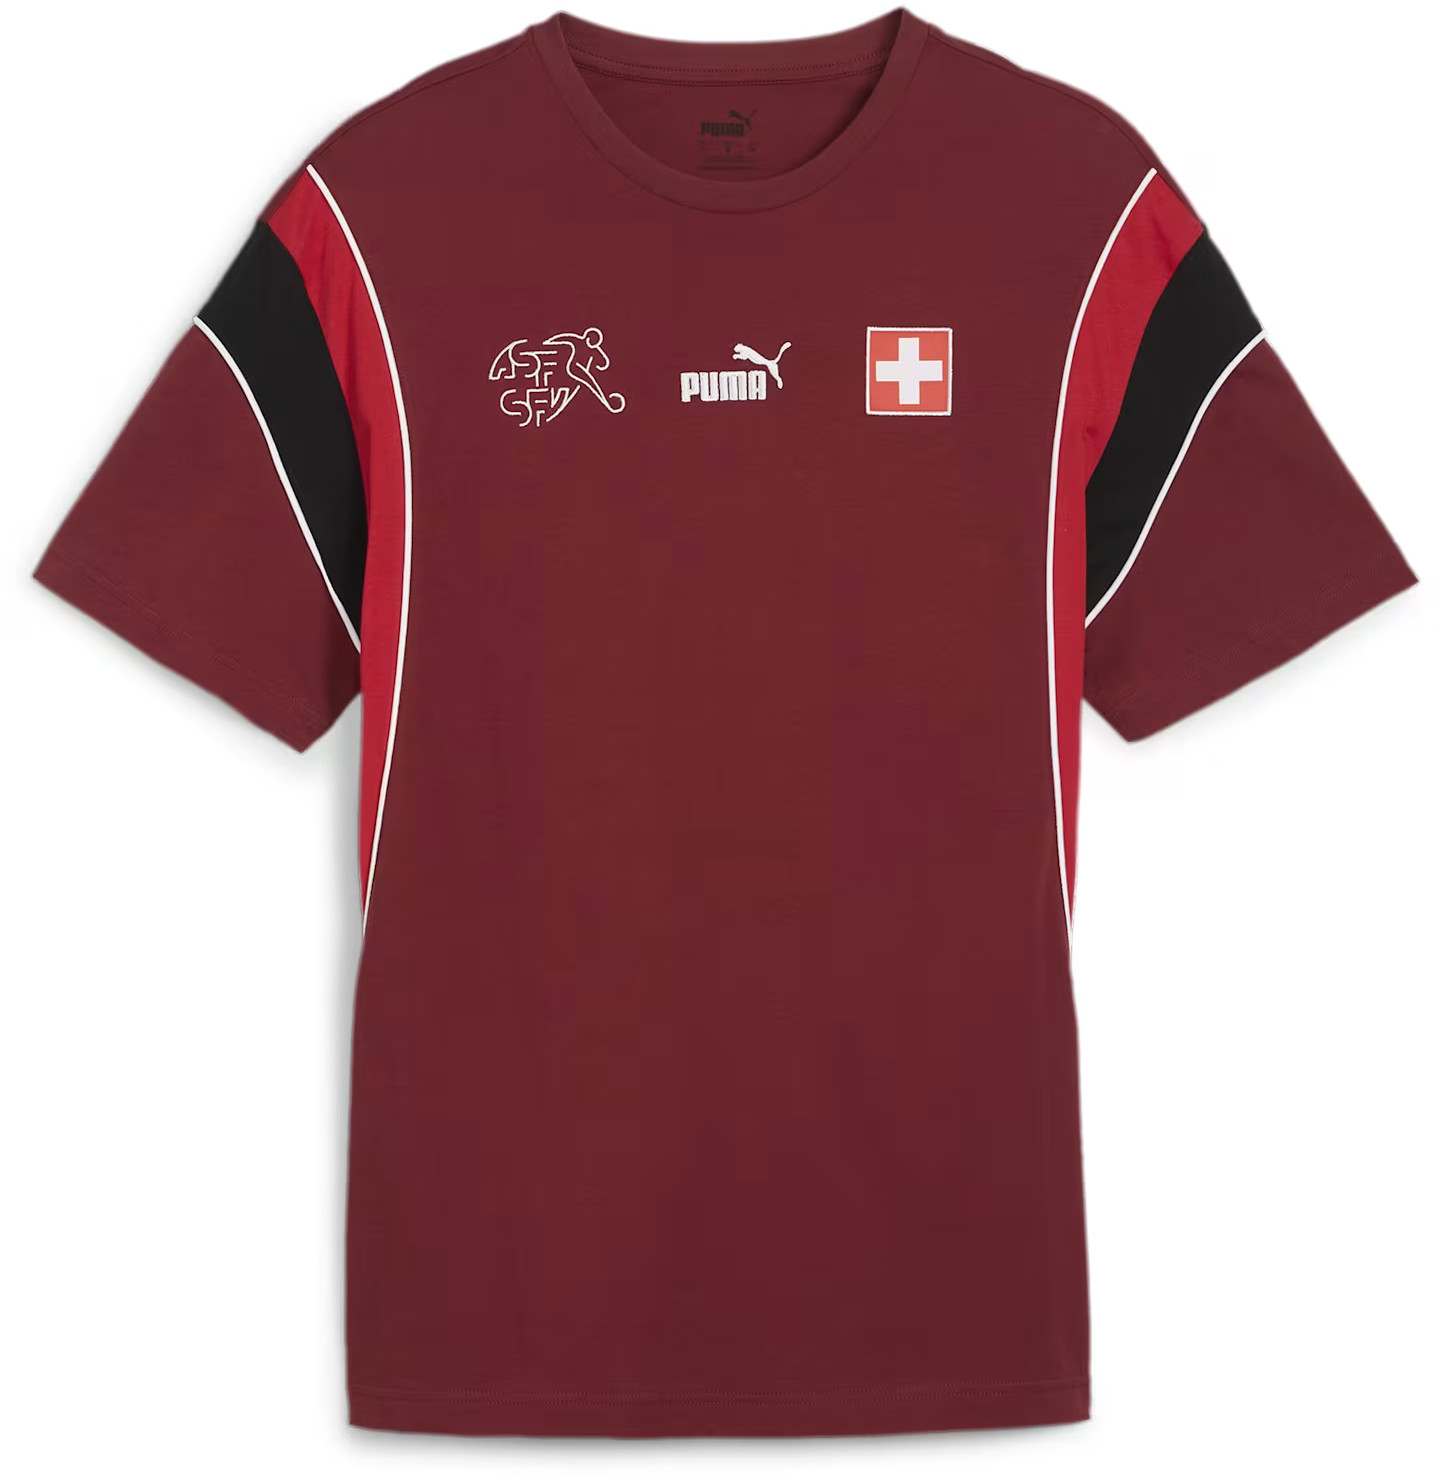 T-shirt Puma Switzerland FtblArchive Men's Tee